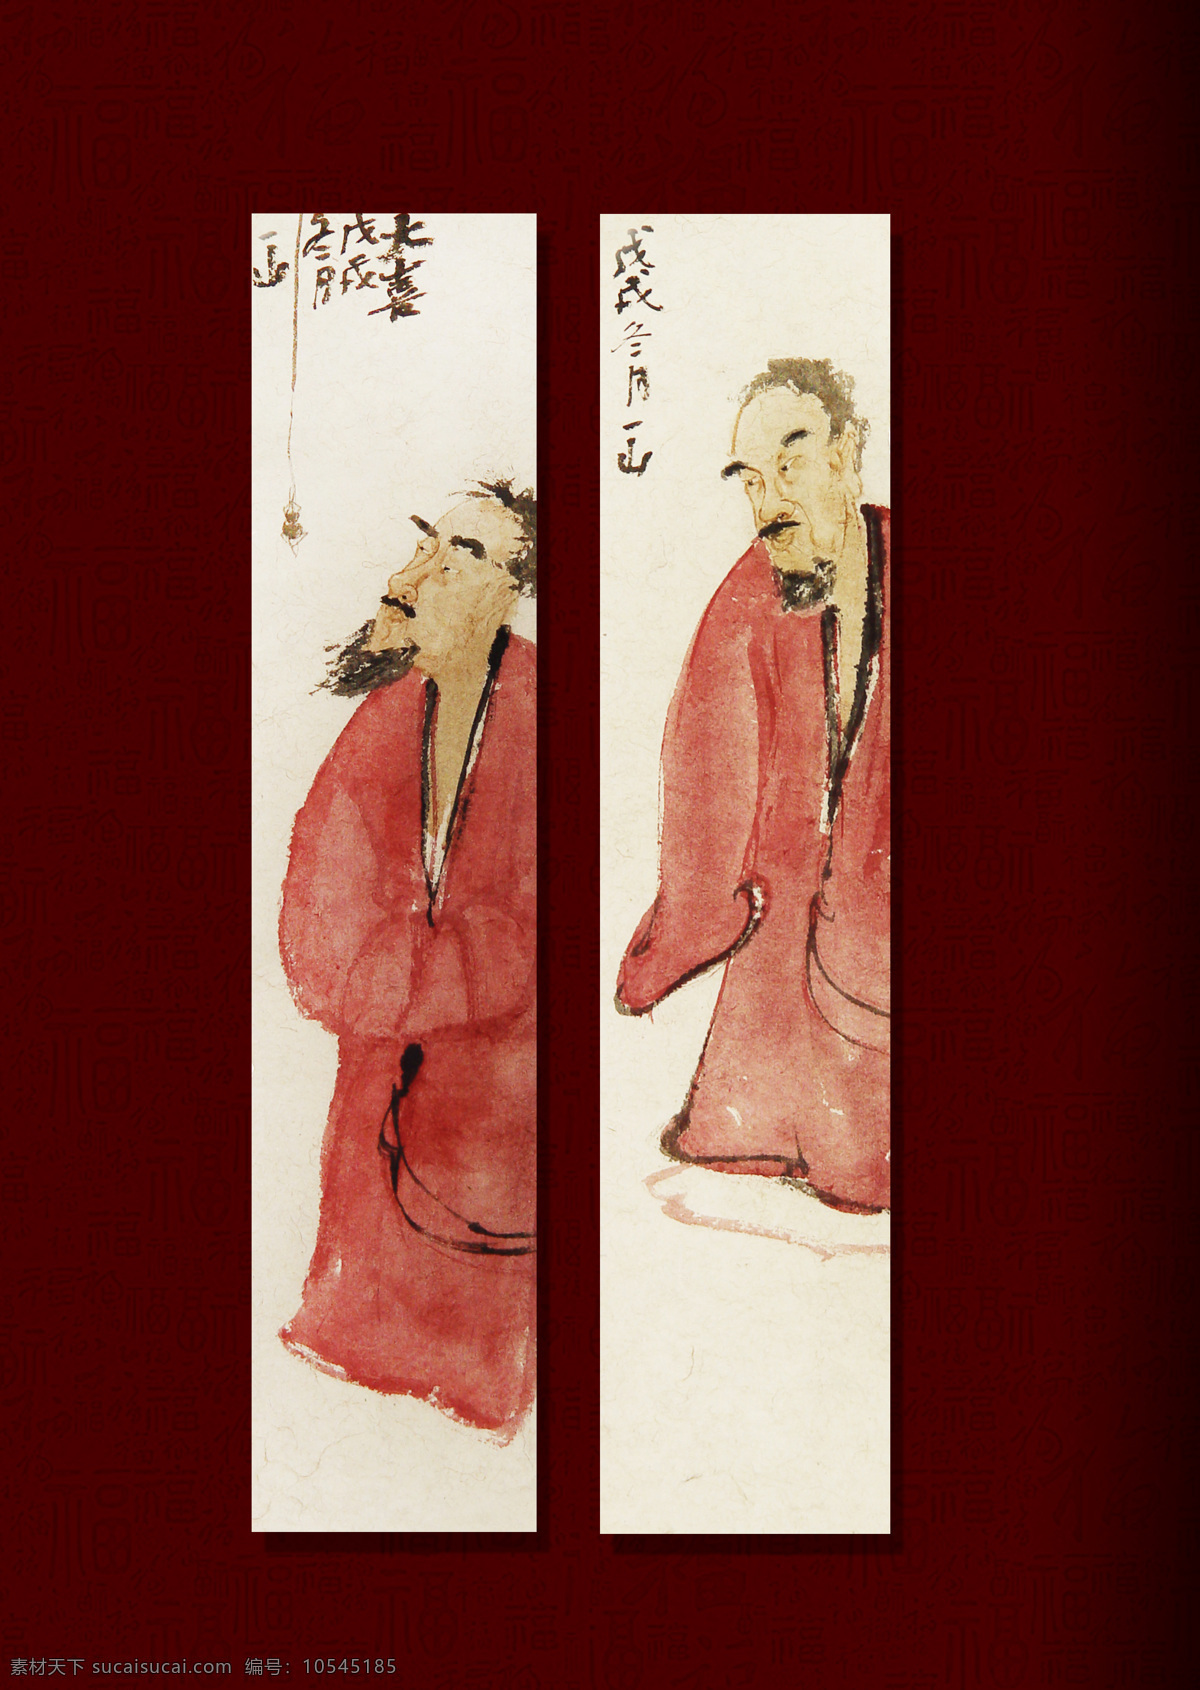 一山中国画 过年的味道 人物 国画 画 写意 过年 人物图库 男性男人